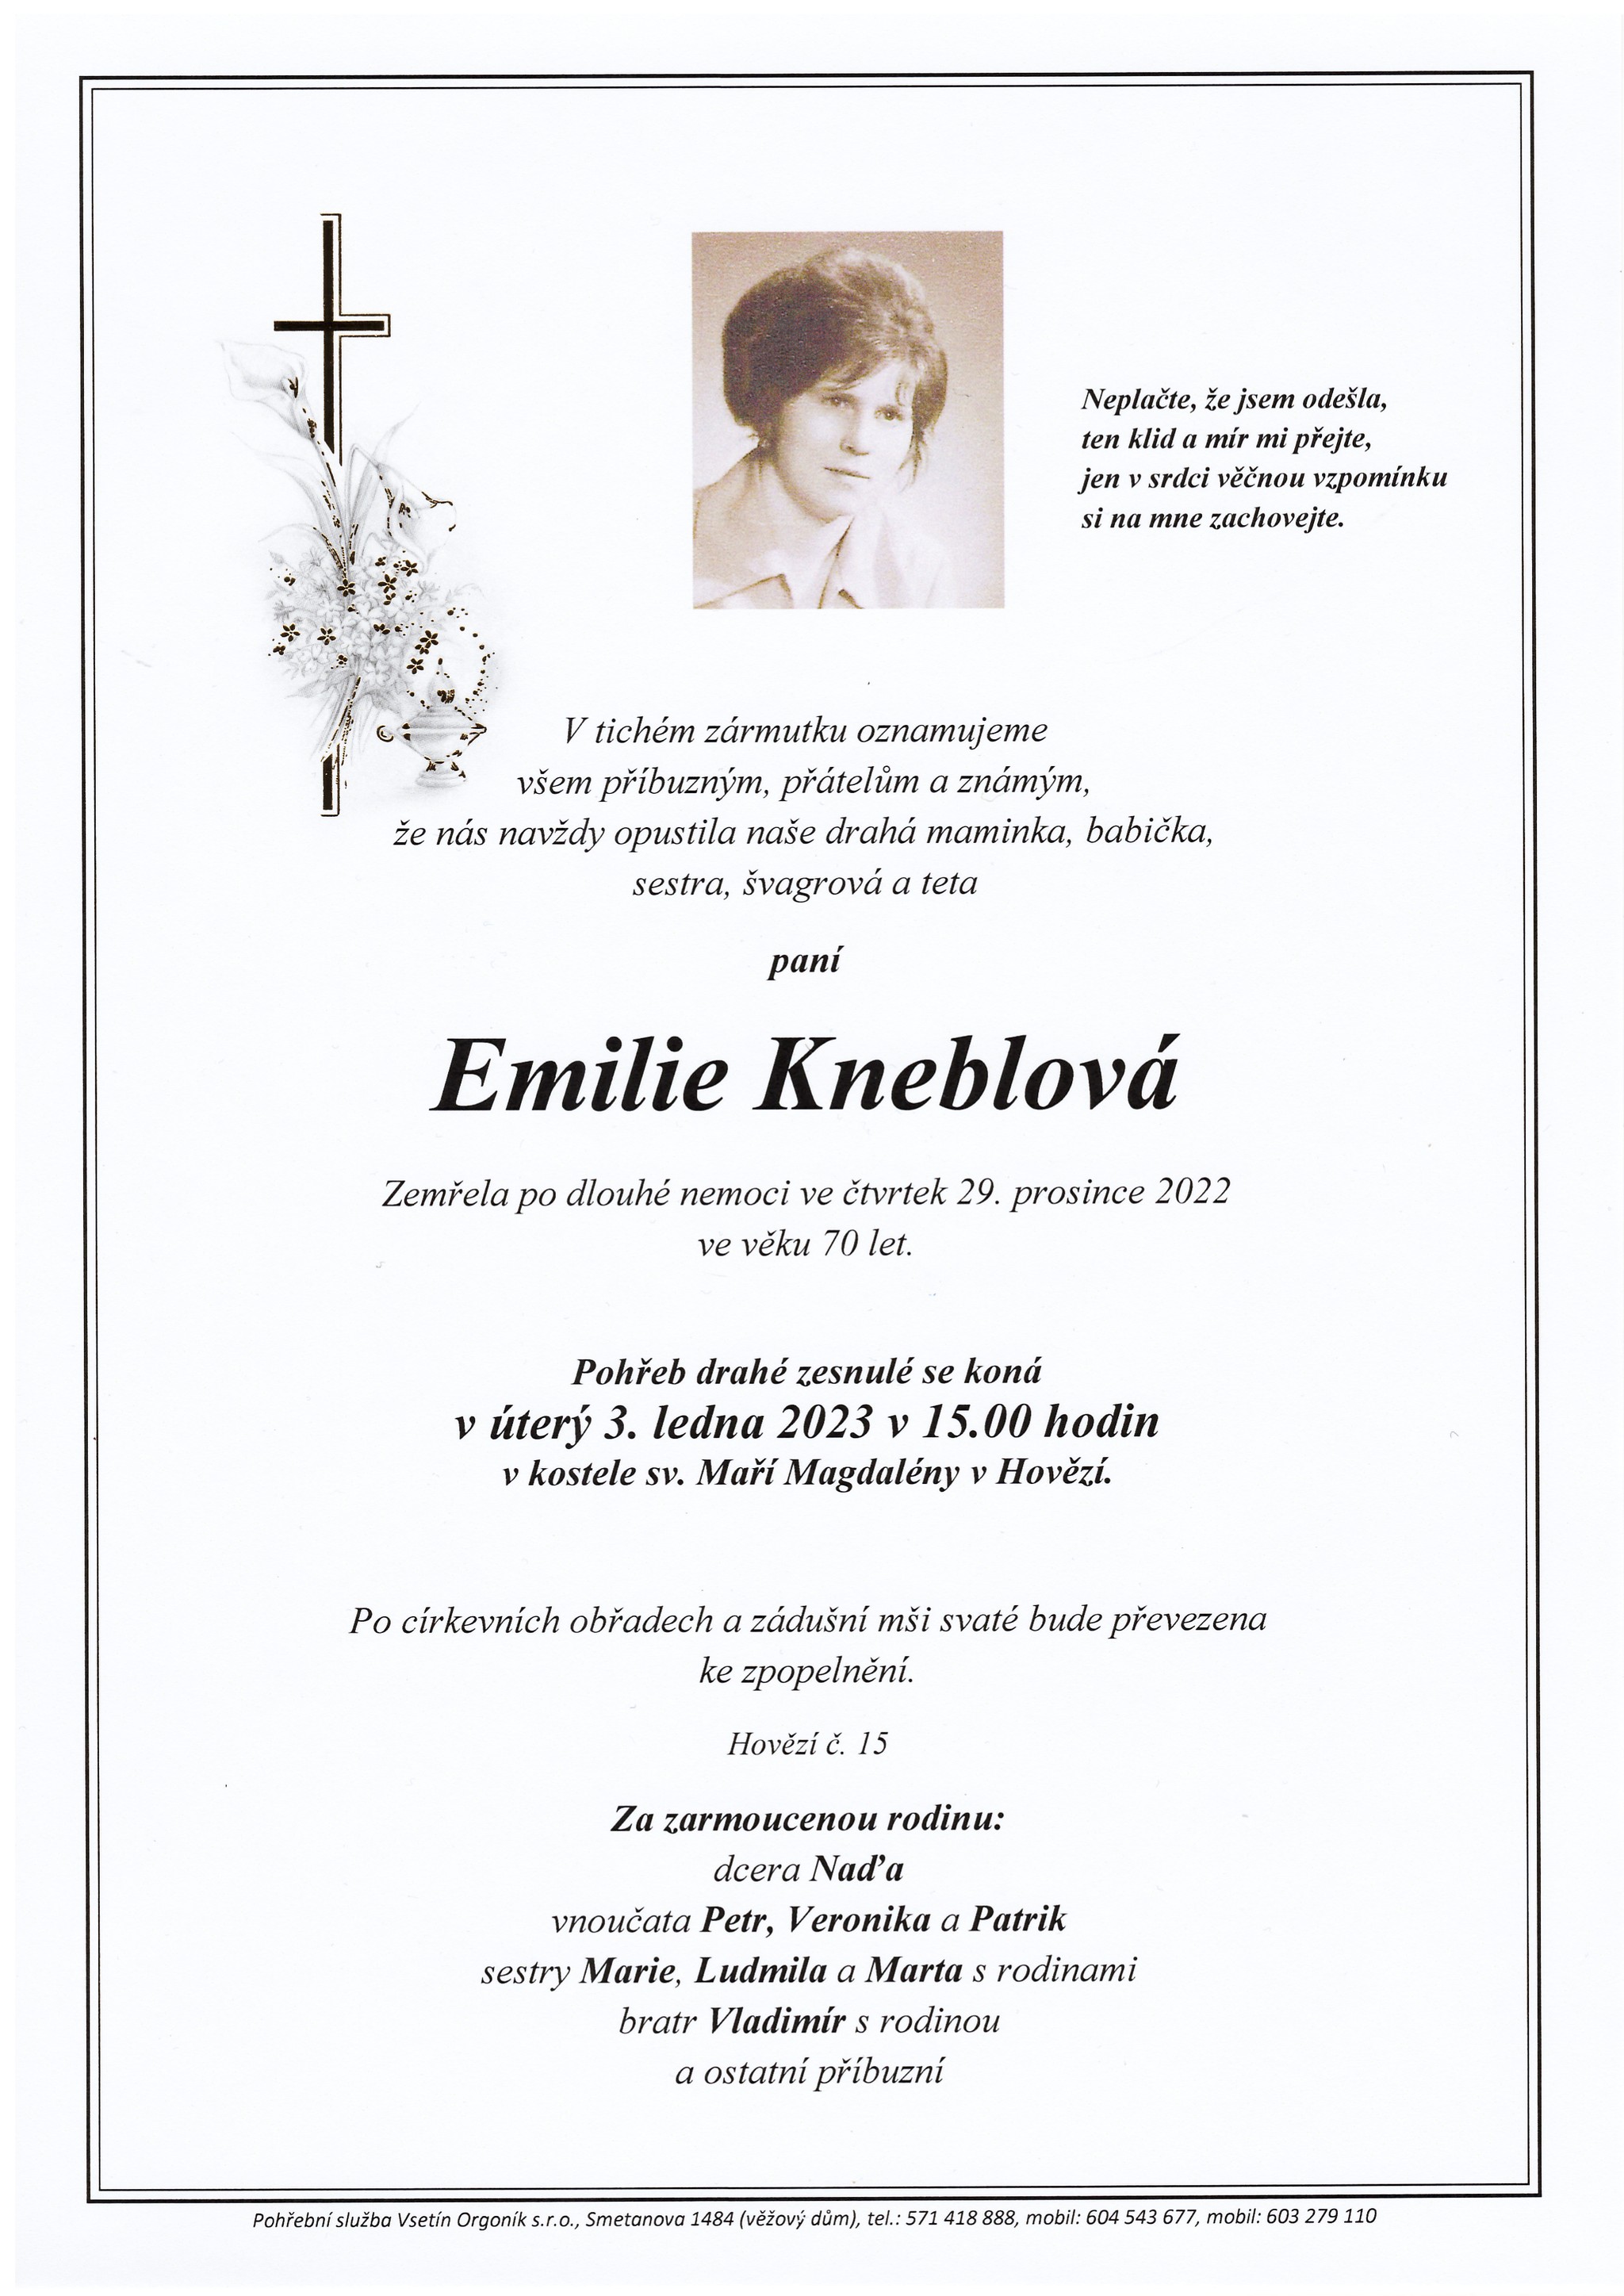 Emilie Kneblová